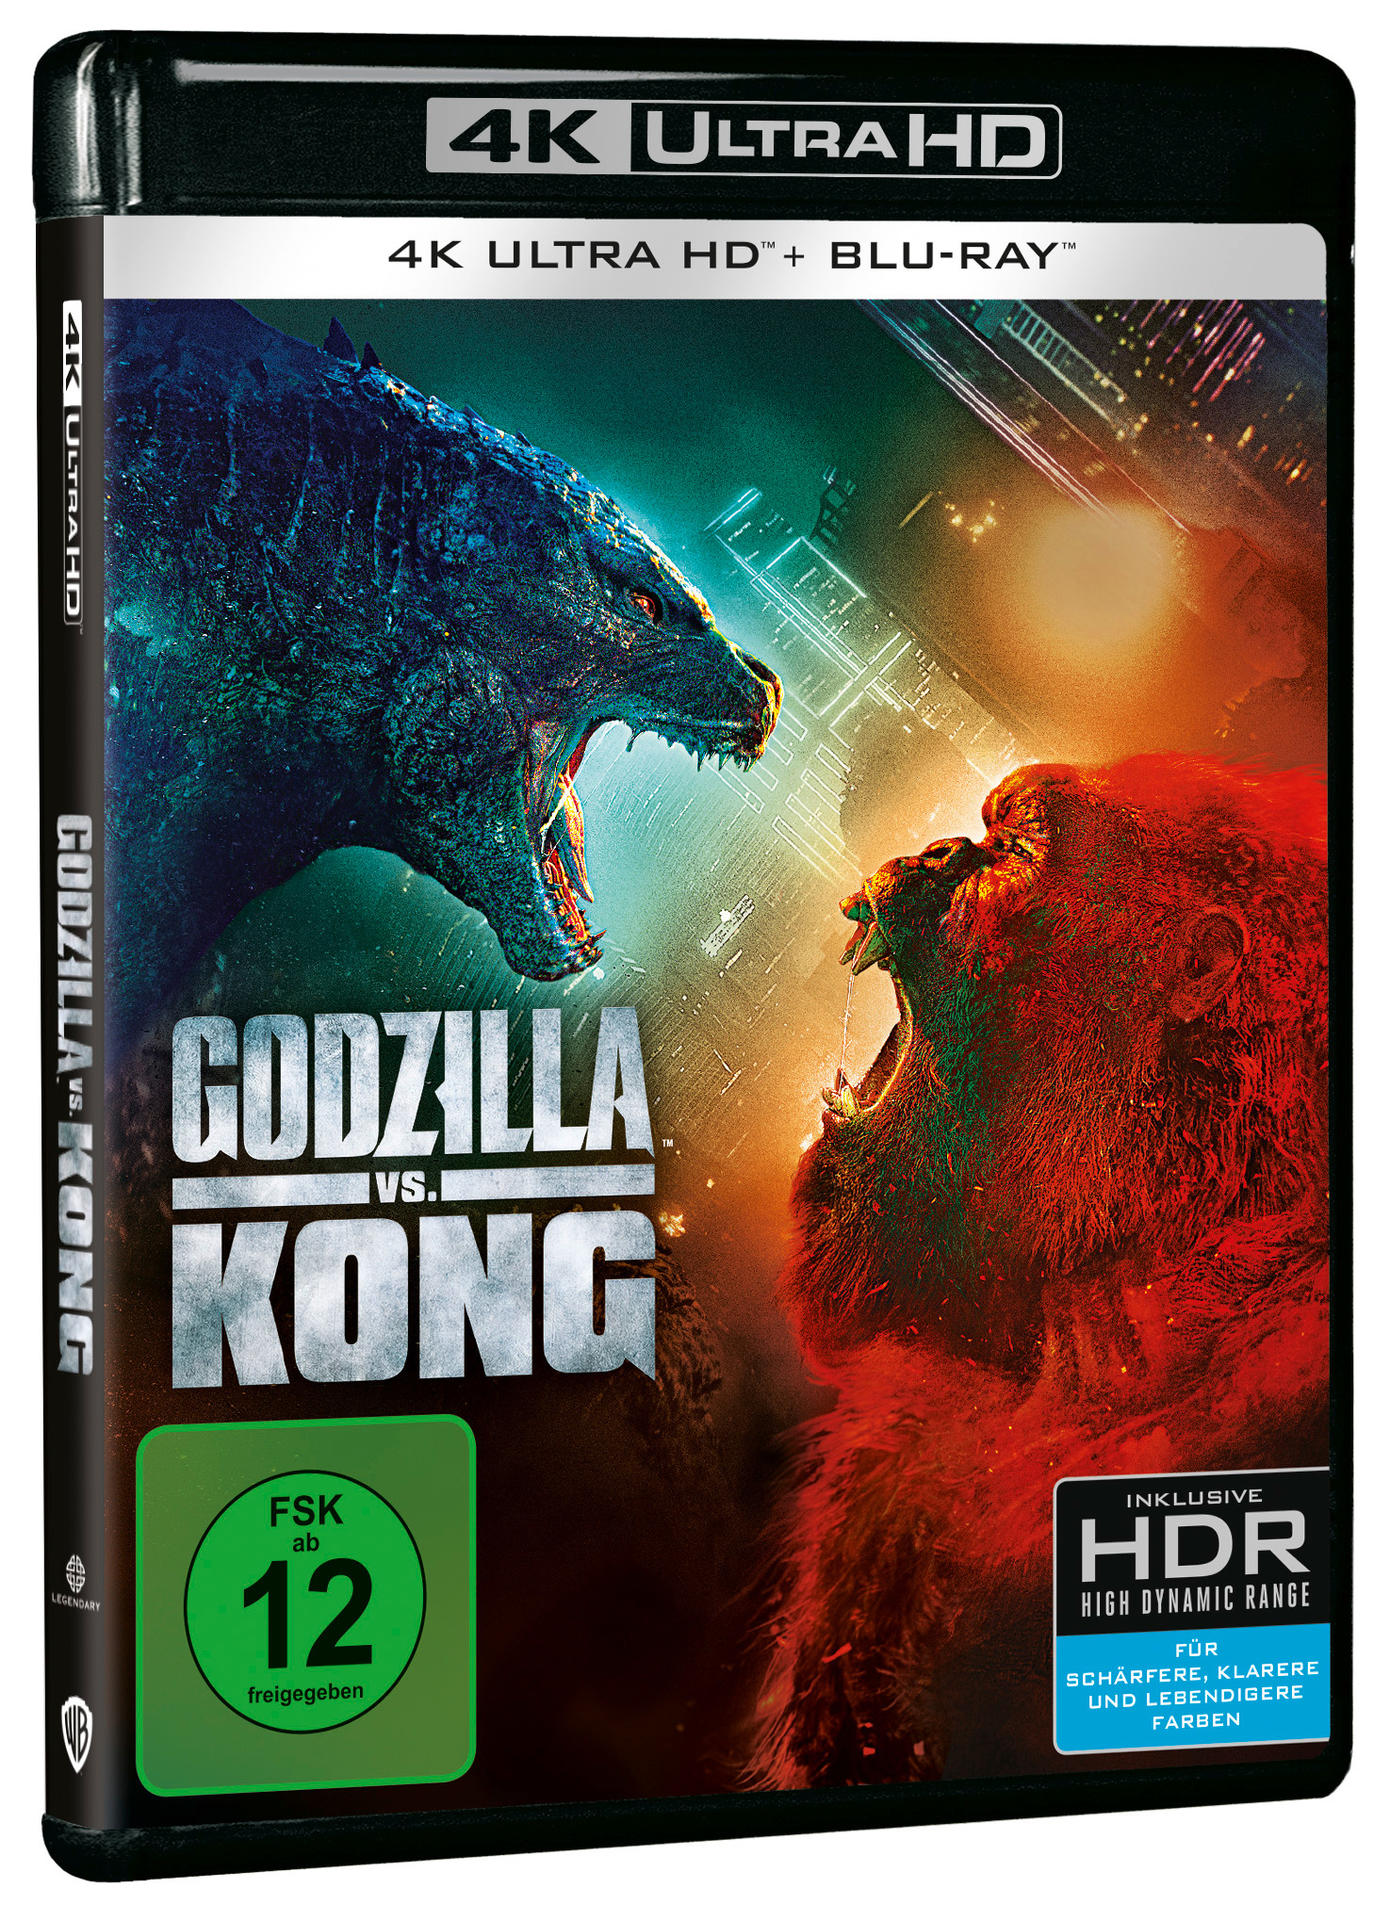 Kong Blu-ray + HD 4K vs. Blu-ray Godzilla Ultra